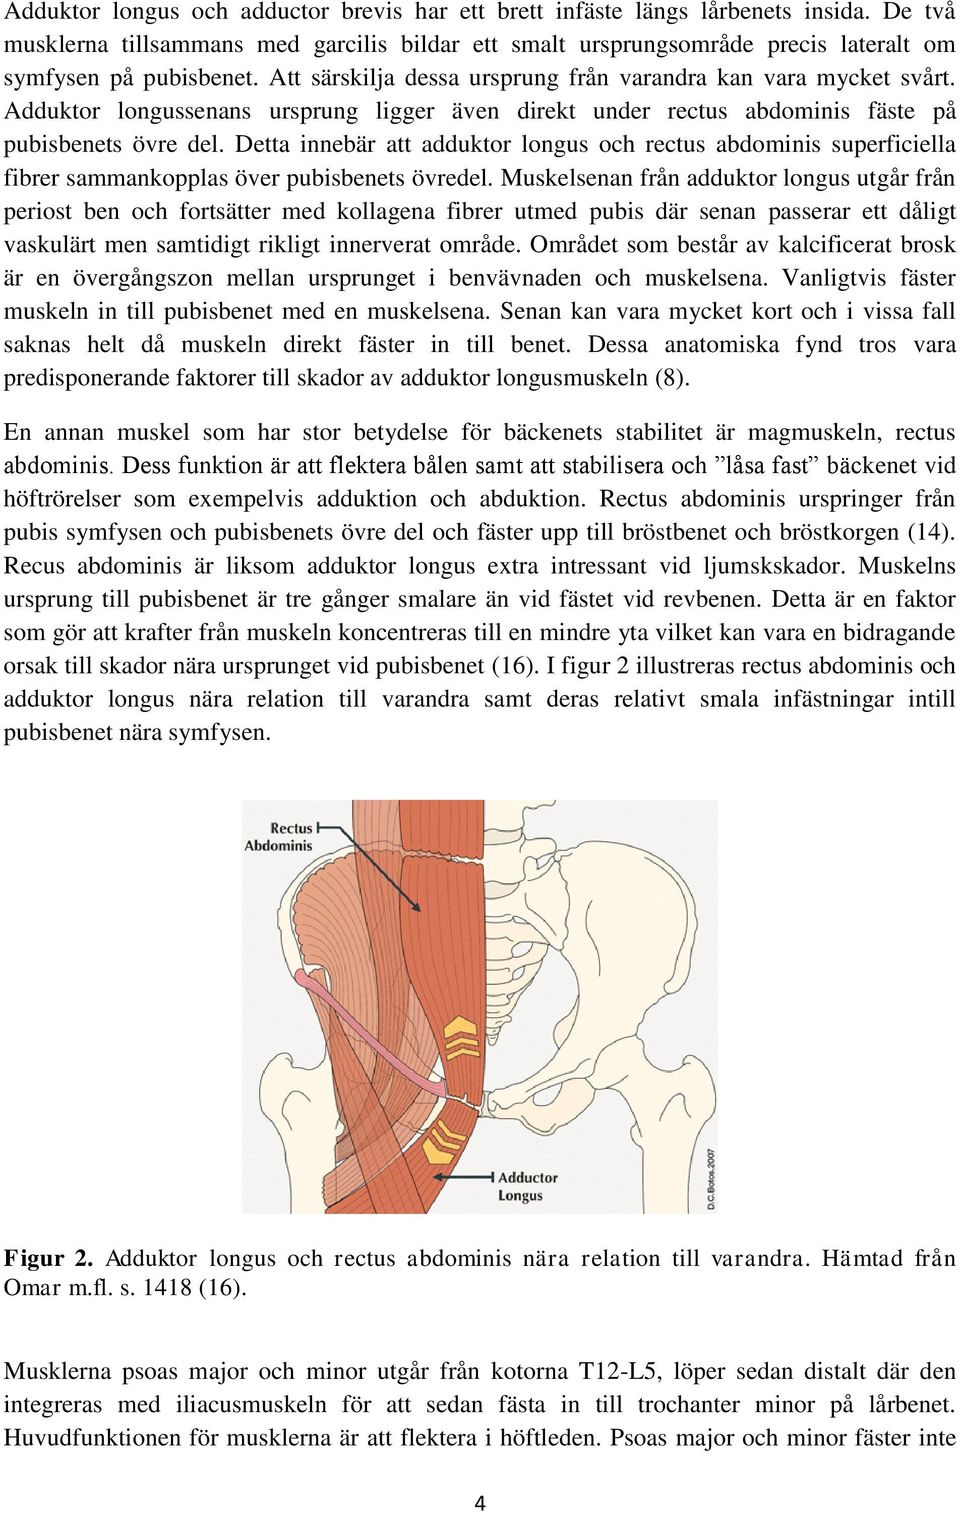 Detta innebär att adduktor longus och rectus abdominis superficiella fibrer sammankopplas över pubisbenets övredel.